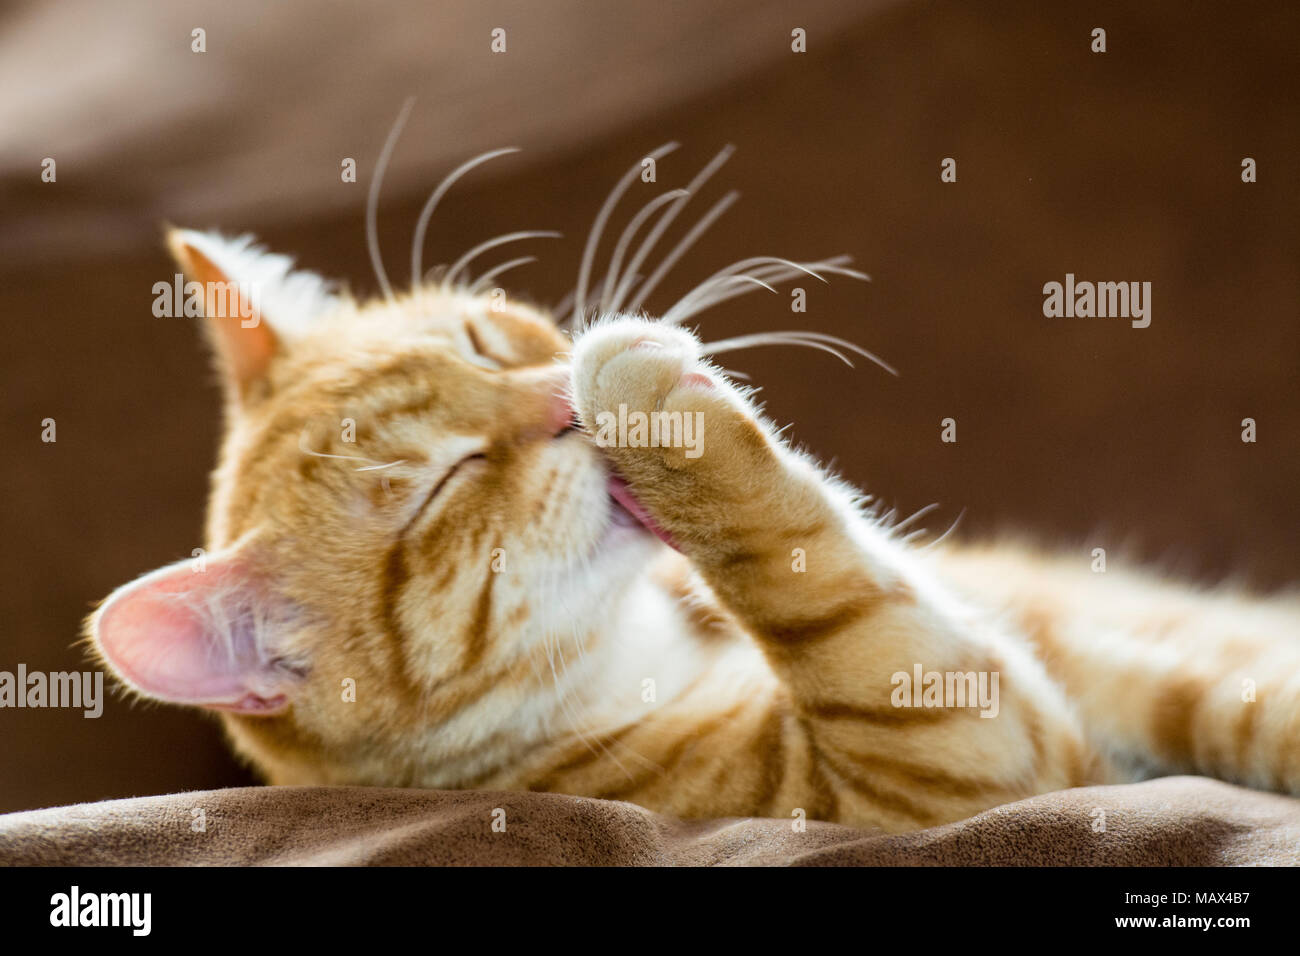 ginger cat washing himself Stock Photo